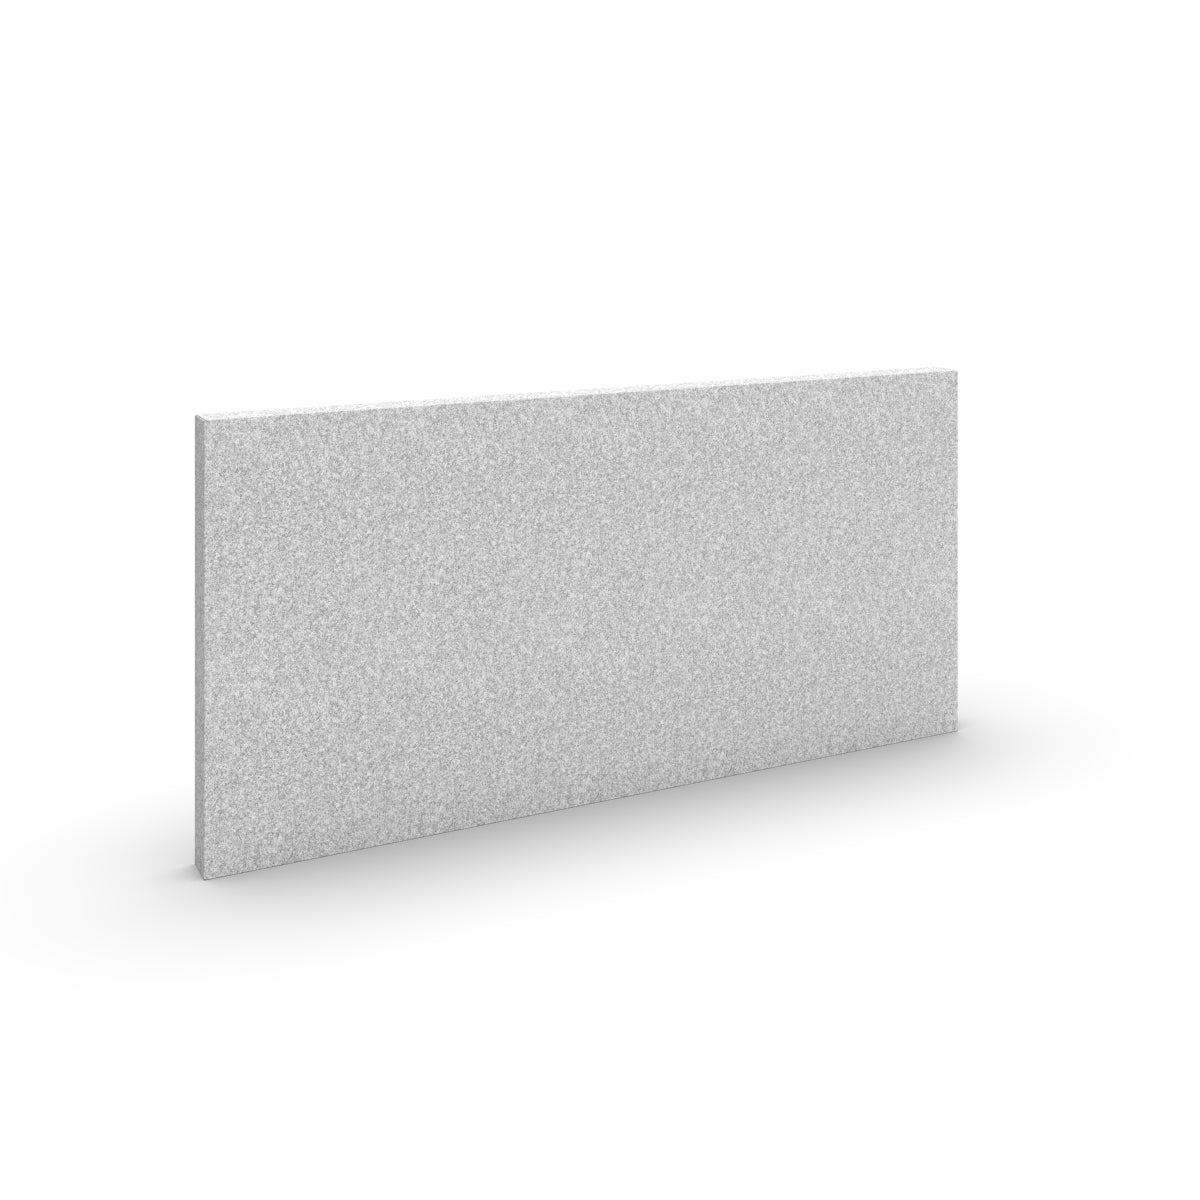 Basic wall sound absorber in light grey acoustic wool felt. Size 58cmx116cm. Akustikkplater og lyddemping vegg